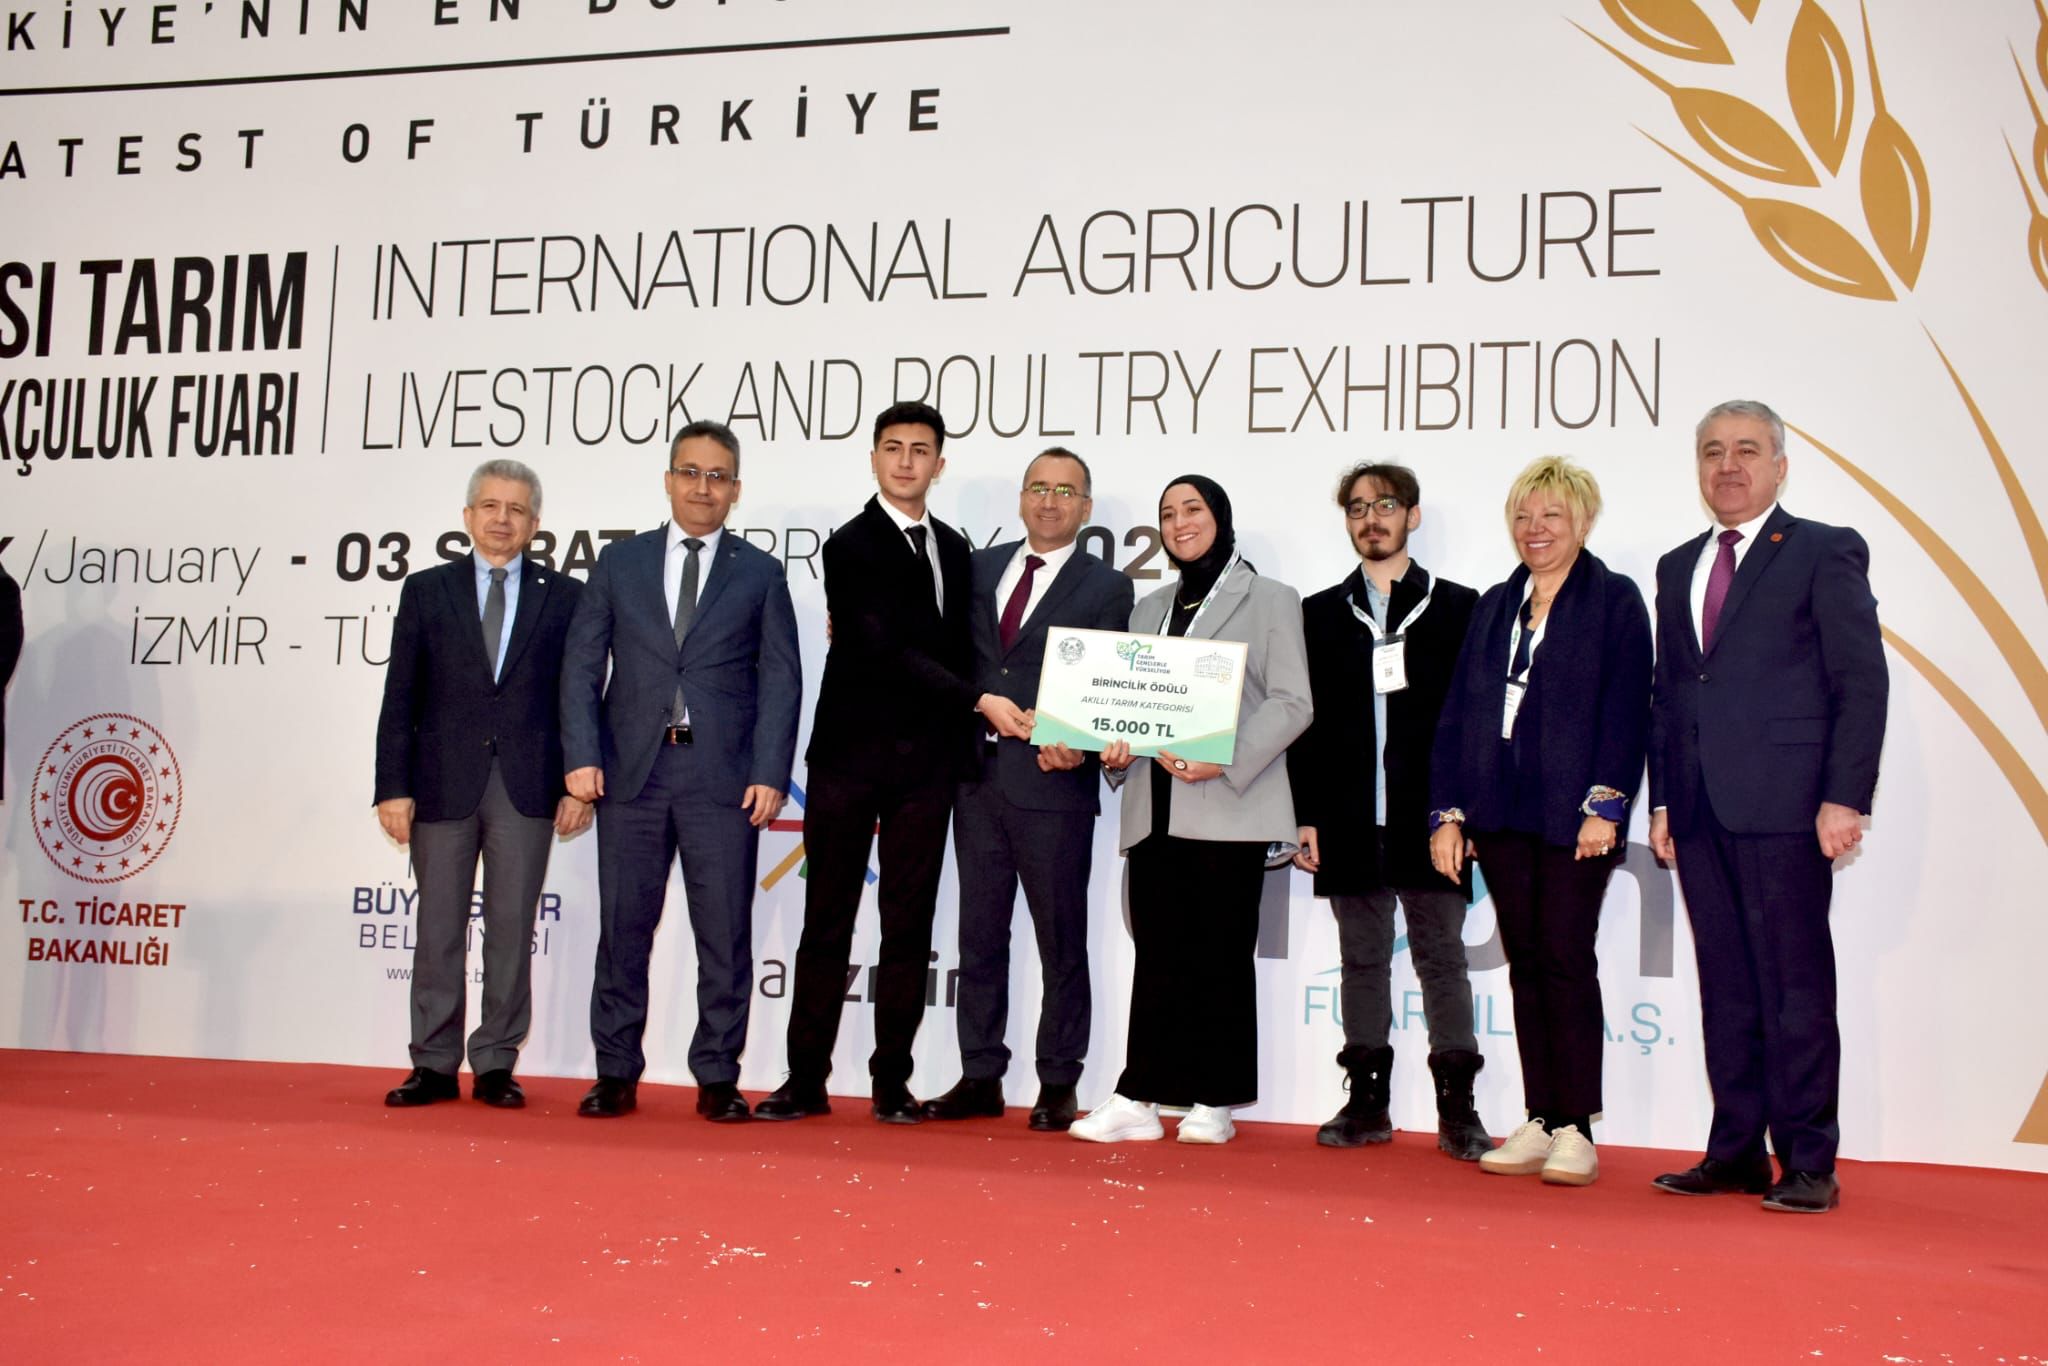 Havacılık Yönetimi öğrencimiz İbrahim Şanal ve Uluslararası Ticaret ve Lojistik öğrencisi Buğra Çelebi İzmir Ticaret Borsası Genç Girişimcilik yarışmasında birincilik kazandı. 